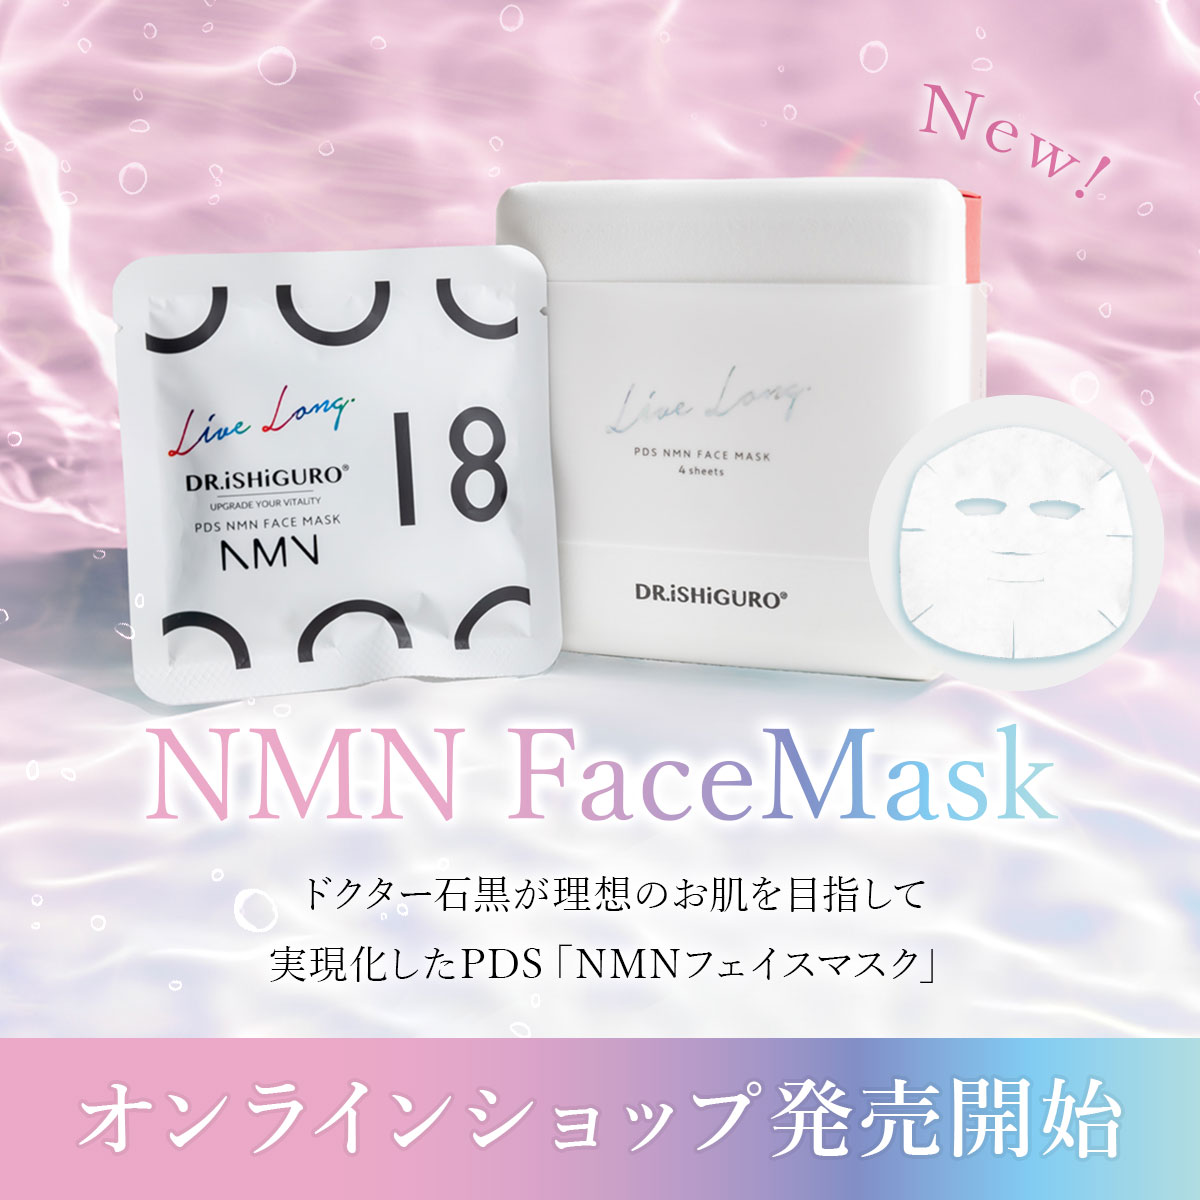 NMNマスク販売開始